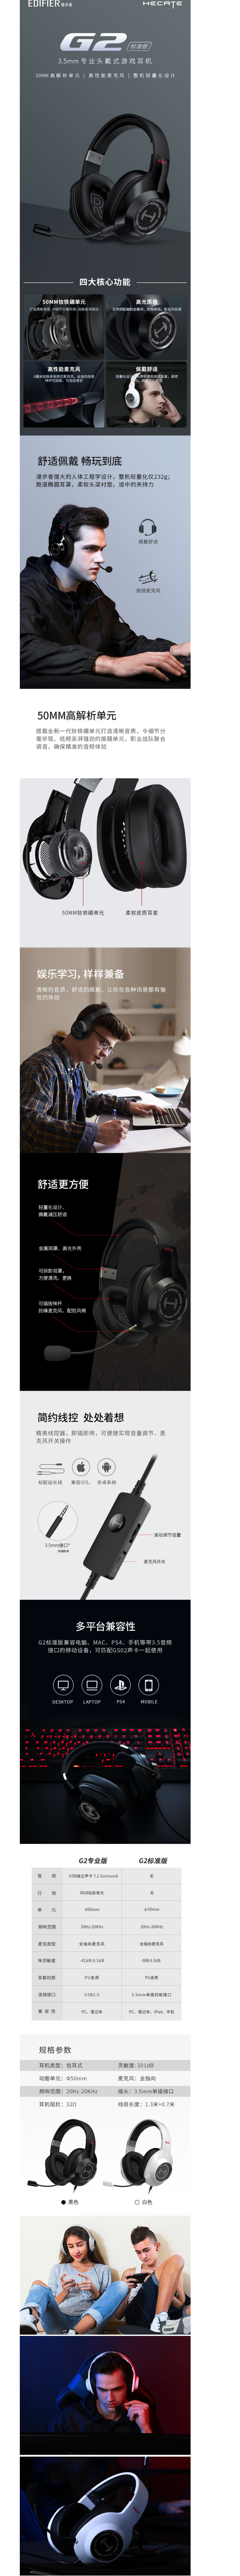 【漫步者G2标准版】漫步者(EDIFIER) HECATE G2标准版 3.5mm电竞游戏耳机 头戴.png